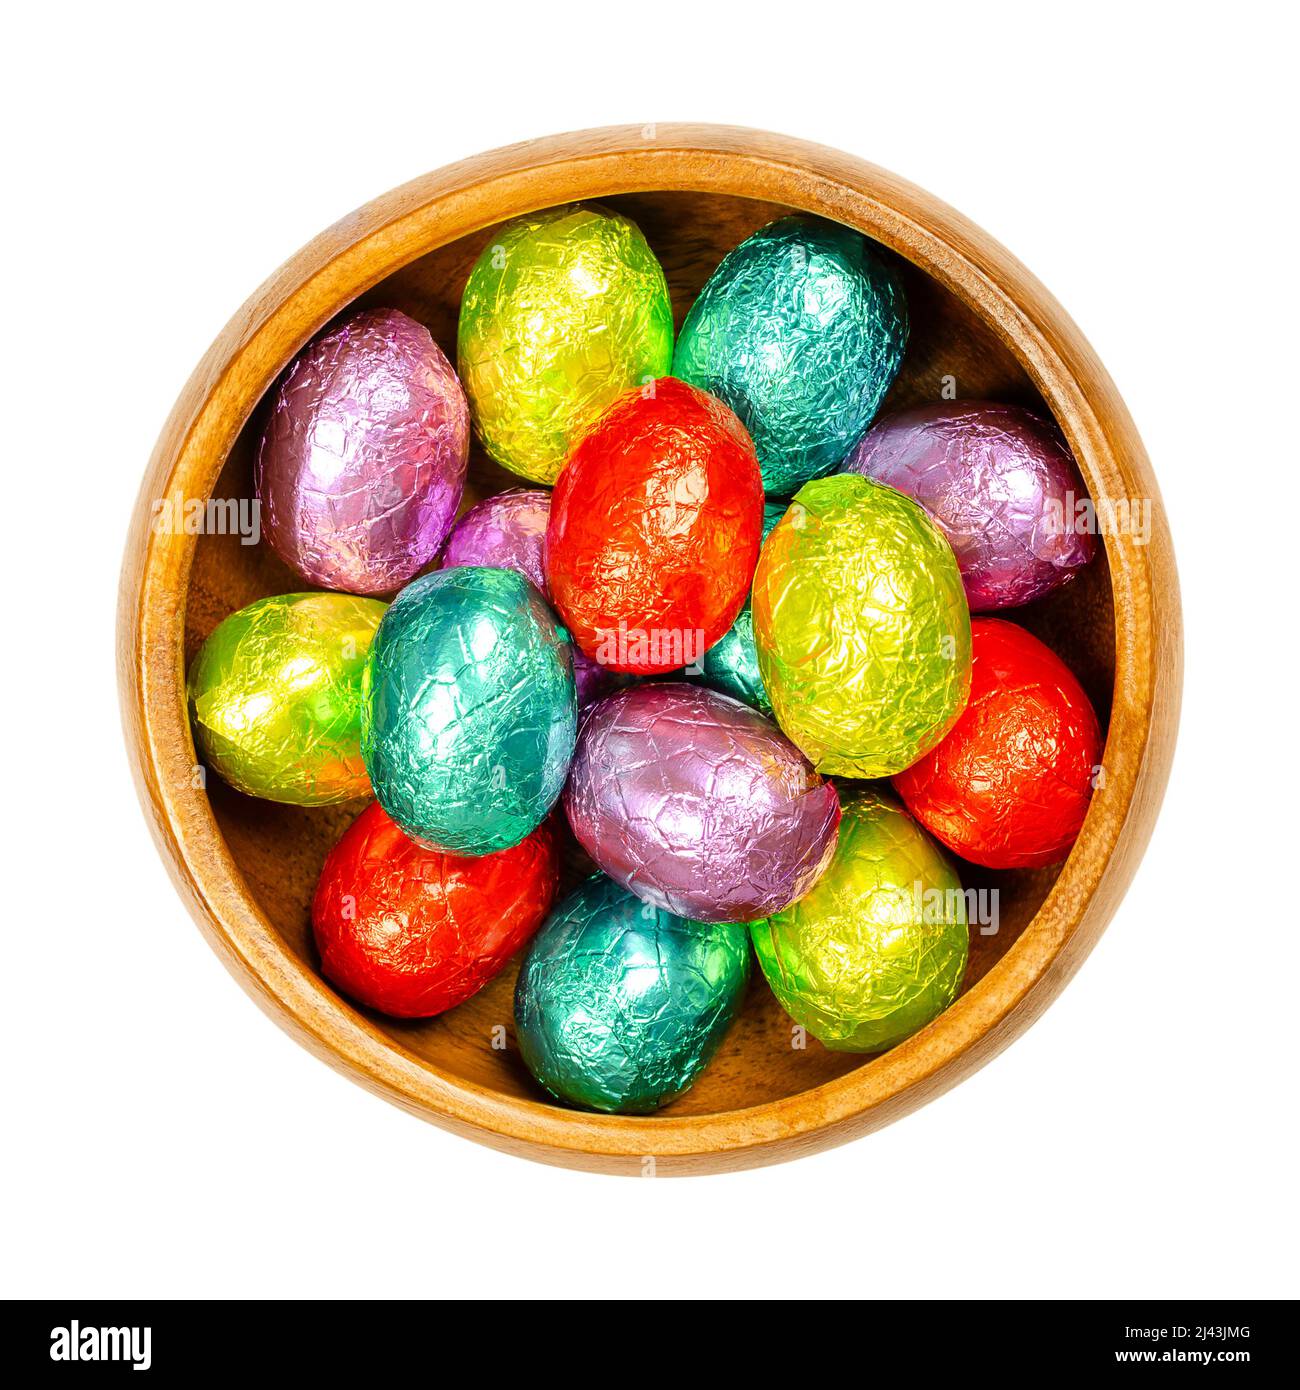 Foglio colorato misto avvolto di cioccolato Pasqua uova, in una ciotola di legno. Mini uova di cioccolato, caramelle dolci, avvolte in foglio di alluminio di diversi colori. Foto Stock